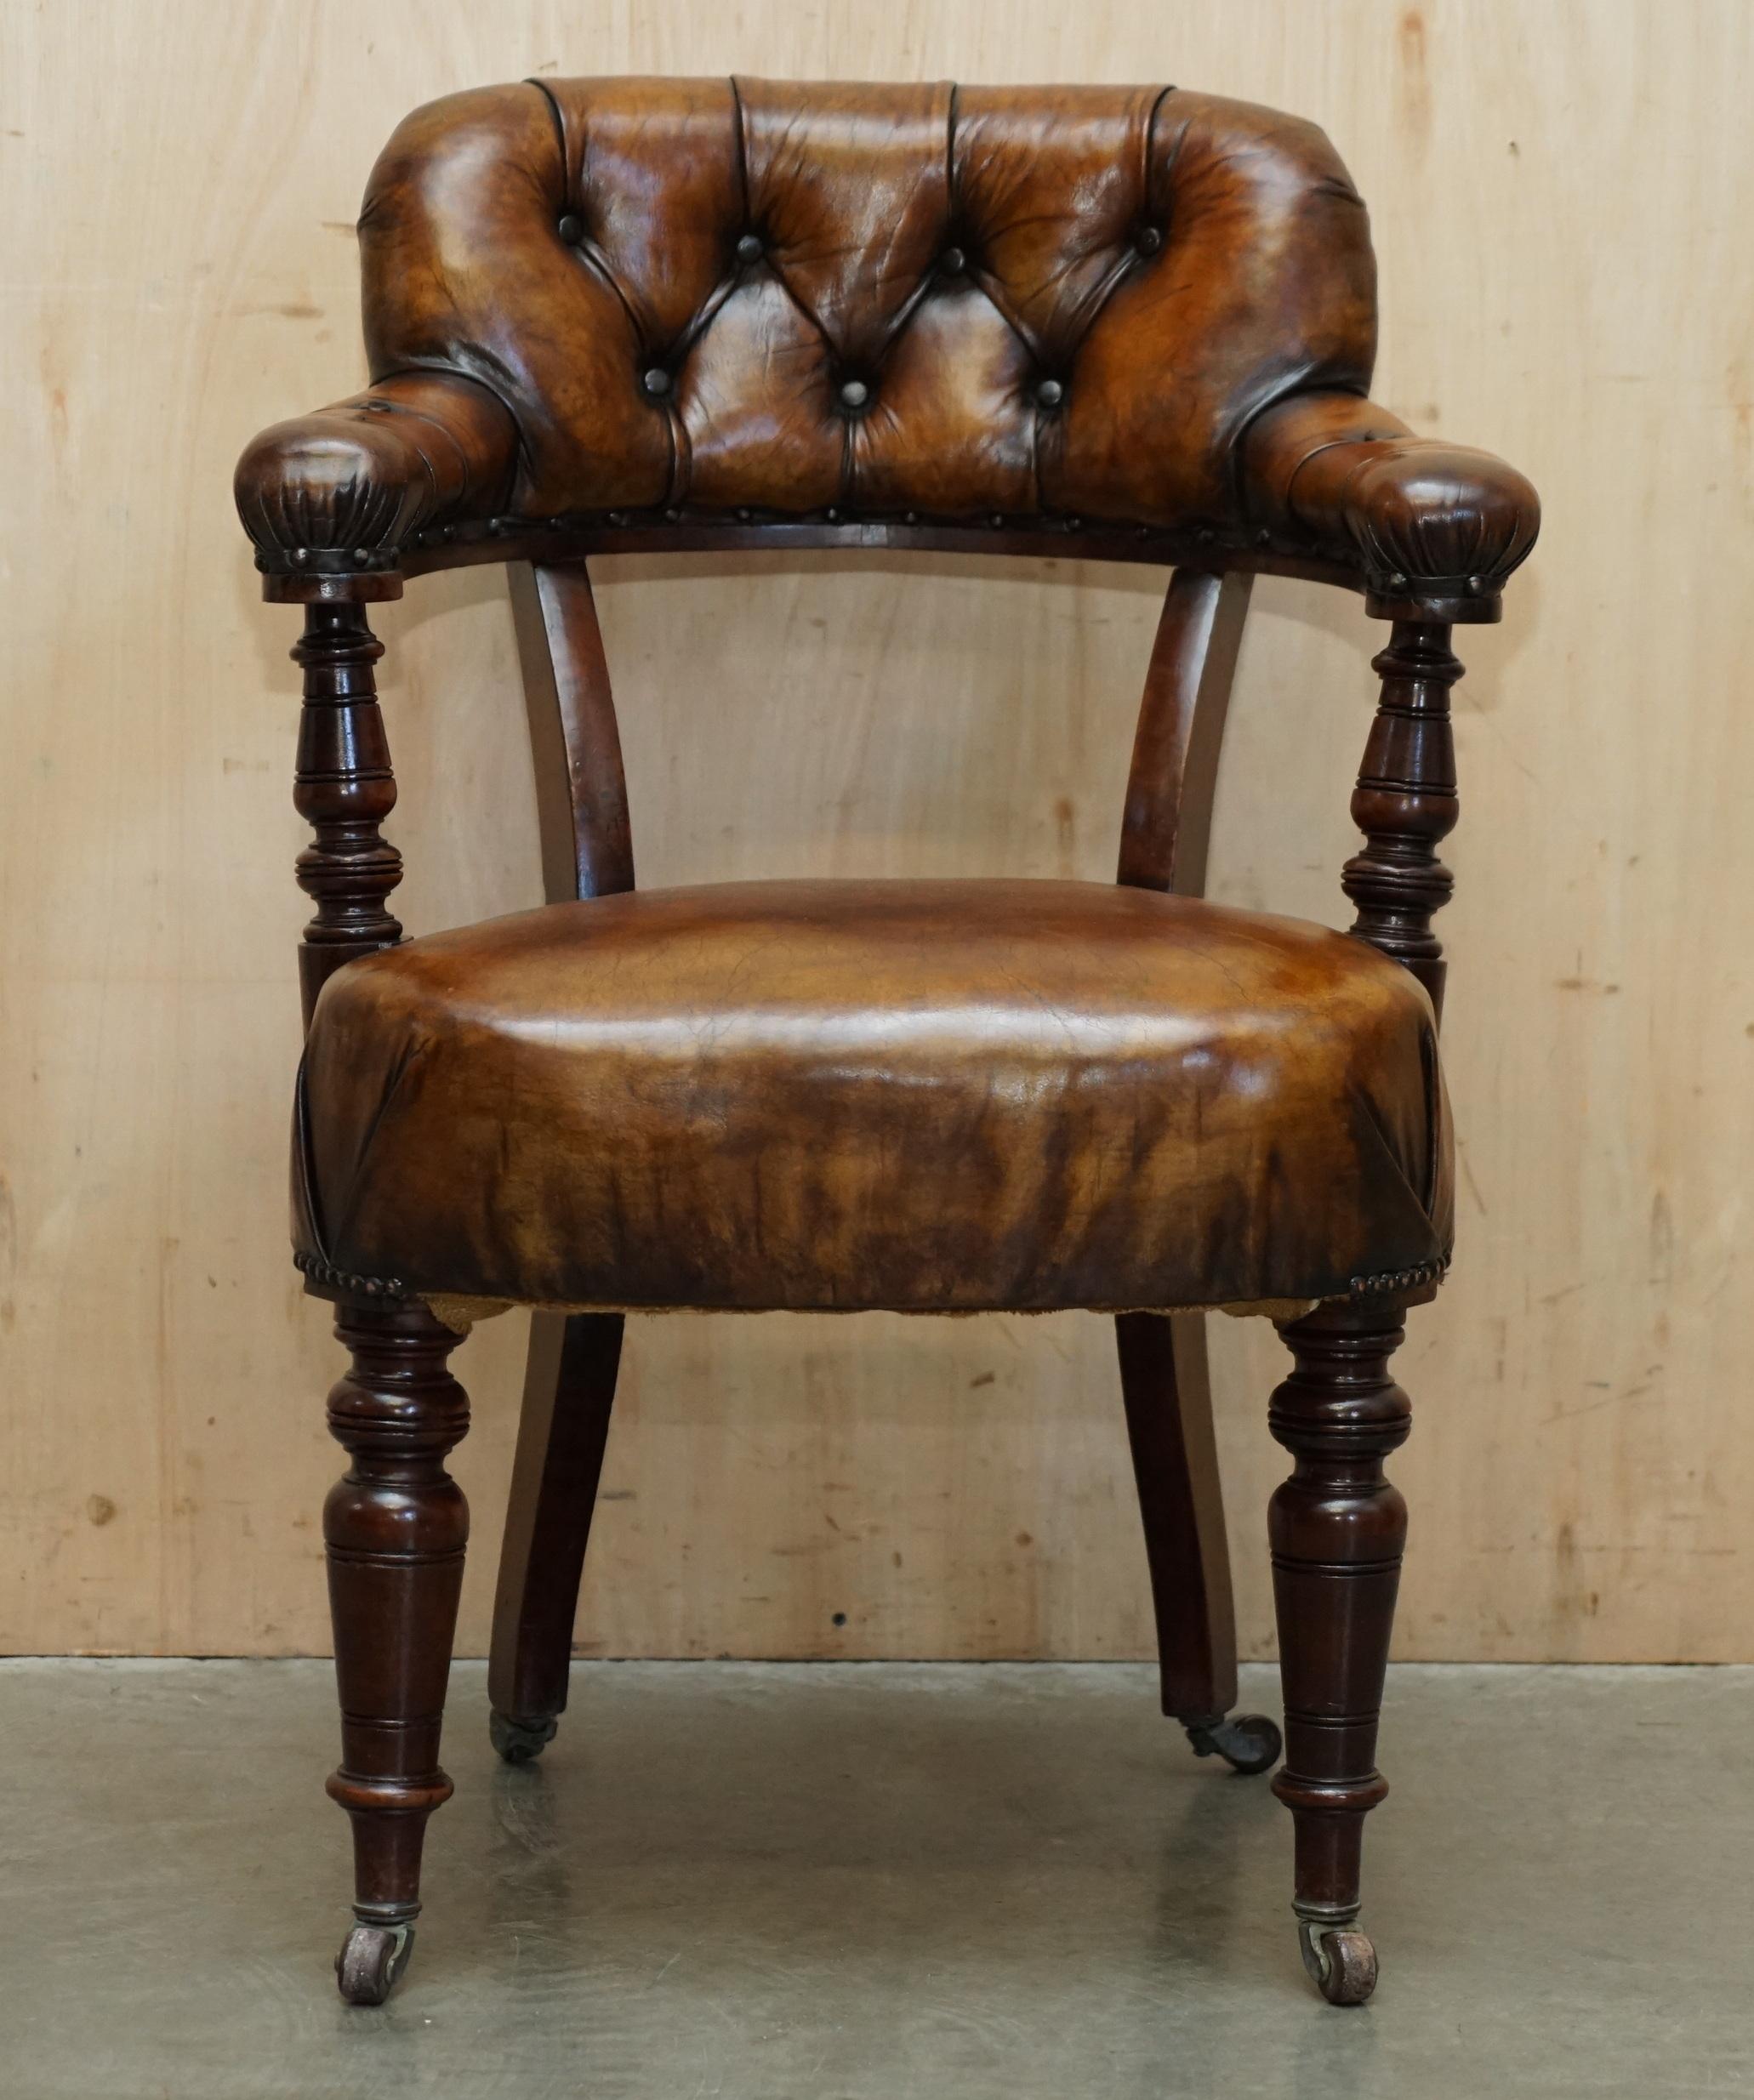 Royal House Antiques

The House Antiques a le plaisir d'offrir à la vente cette belle chaise de directeur en cuir marron Chesterfield, entièrement restaurée et encadrée d'acajou, datant d'environ 1830.

Veuillez noter que les frais de livraison